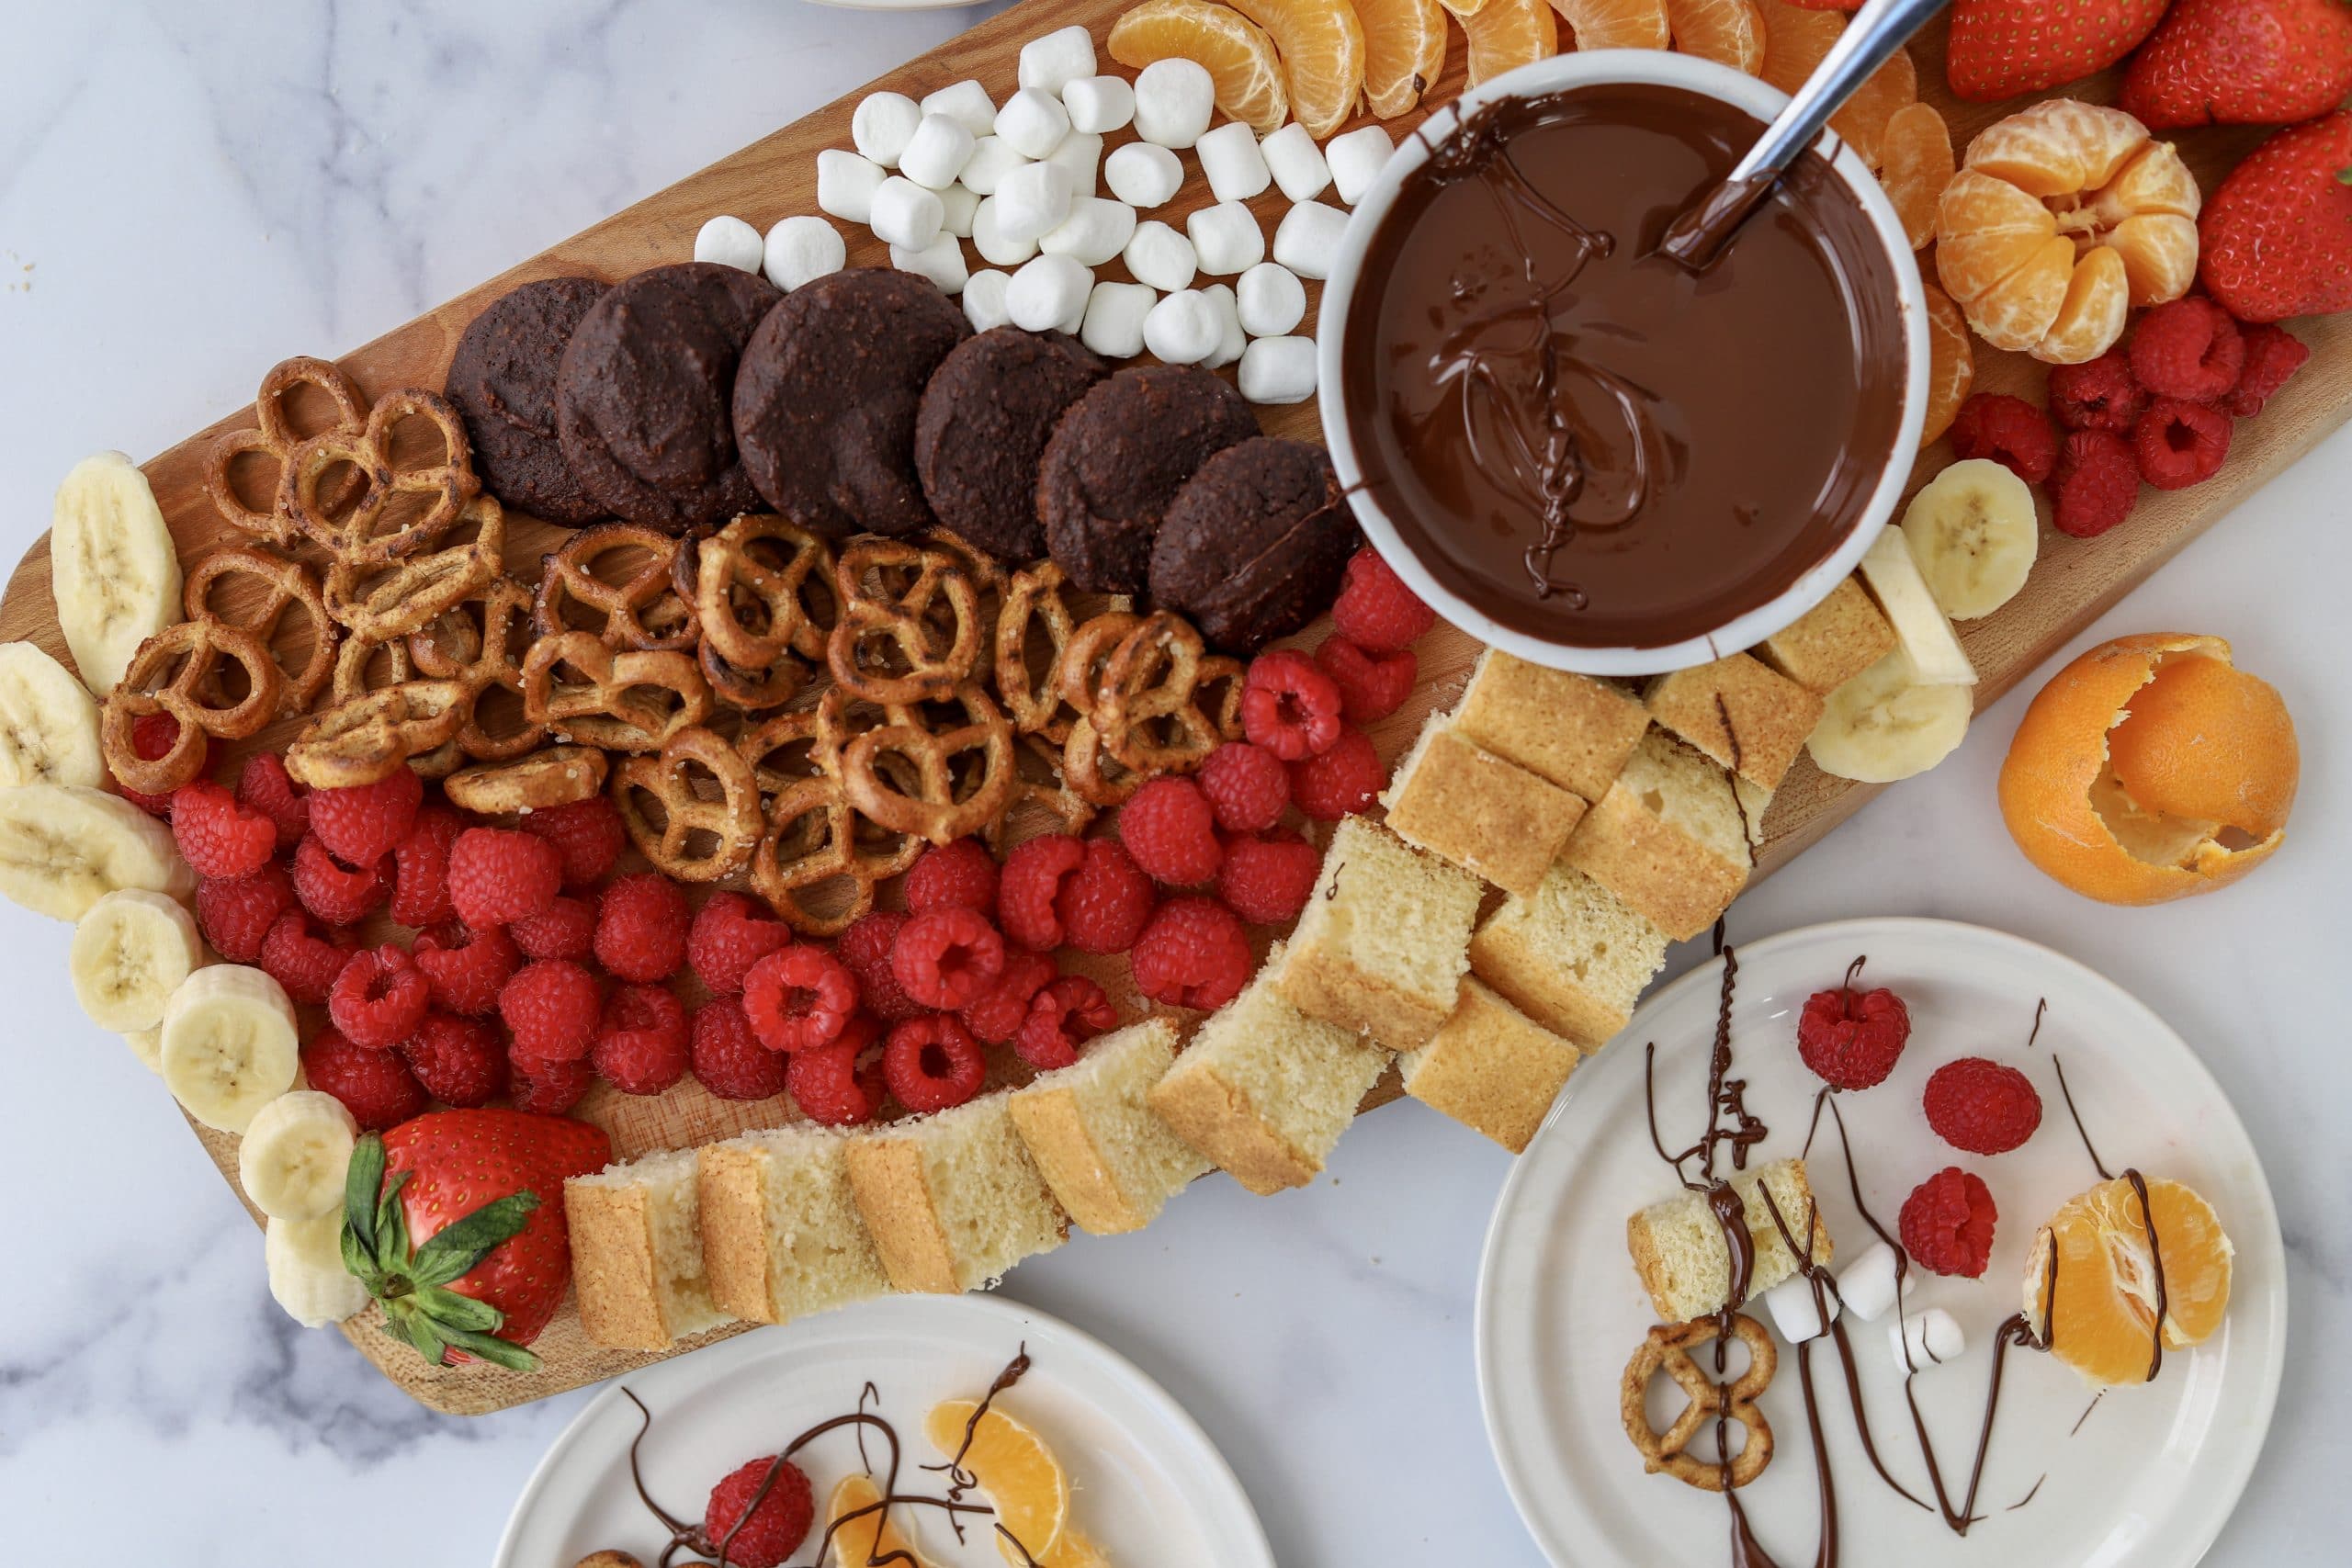 Simple Chocolate Fondue Snack or Dessert Board - Hälsa Nutrition